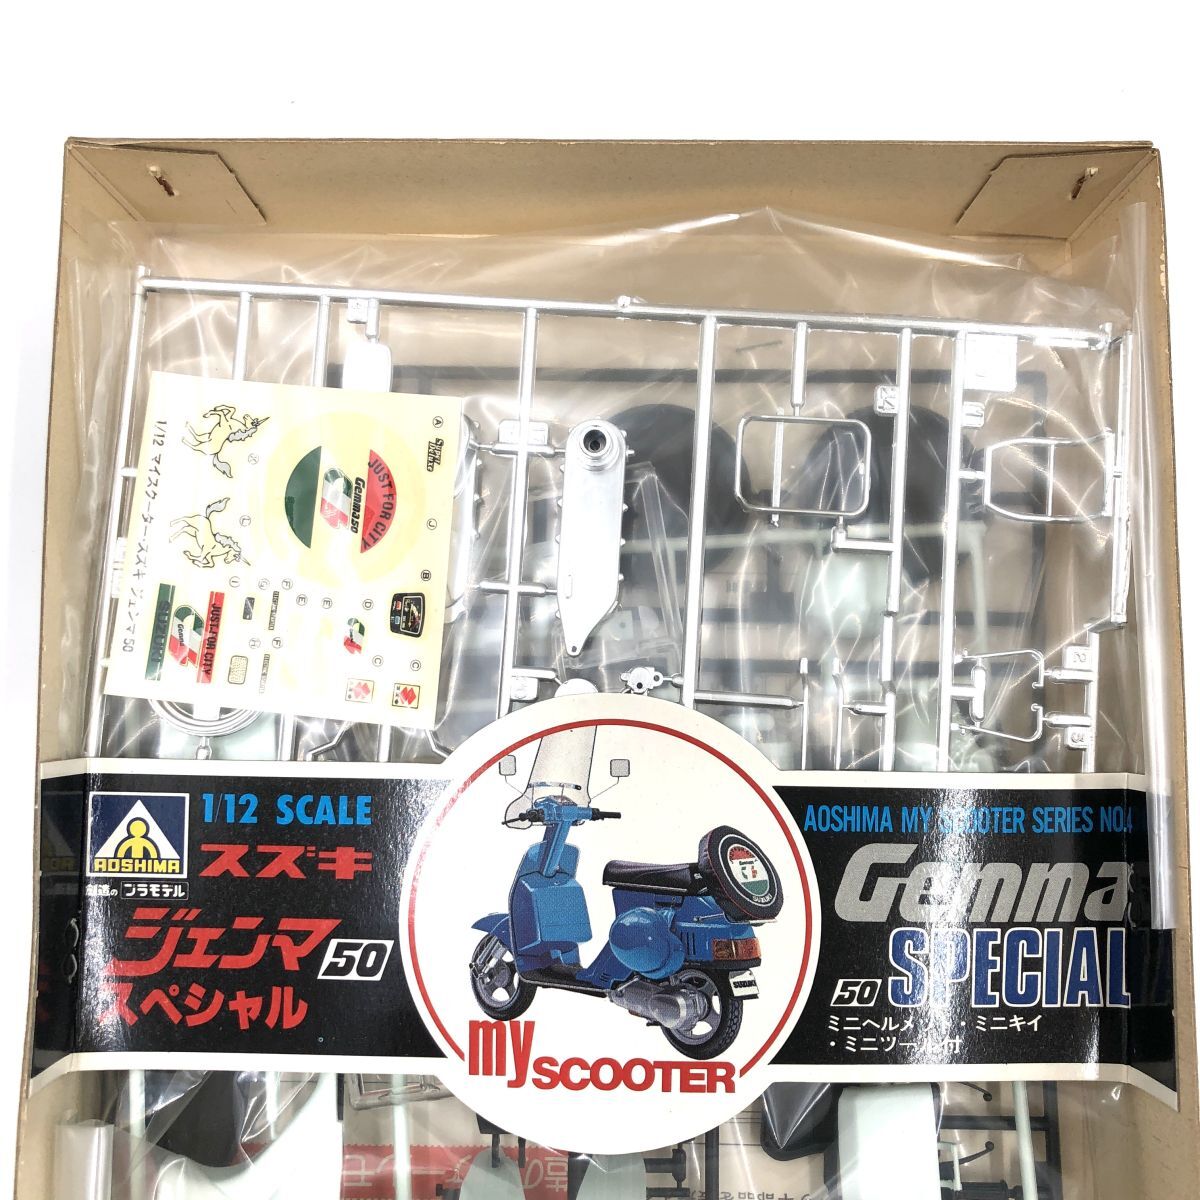  Suzuki Gemma 50 специальный AOSHIMA Aoshima пластиковая модель 1/12 [310-052#80]